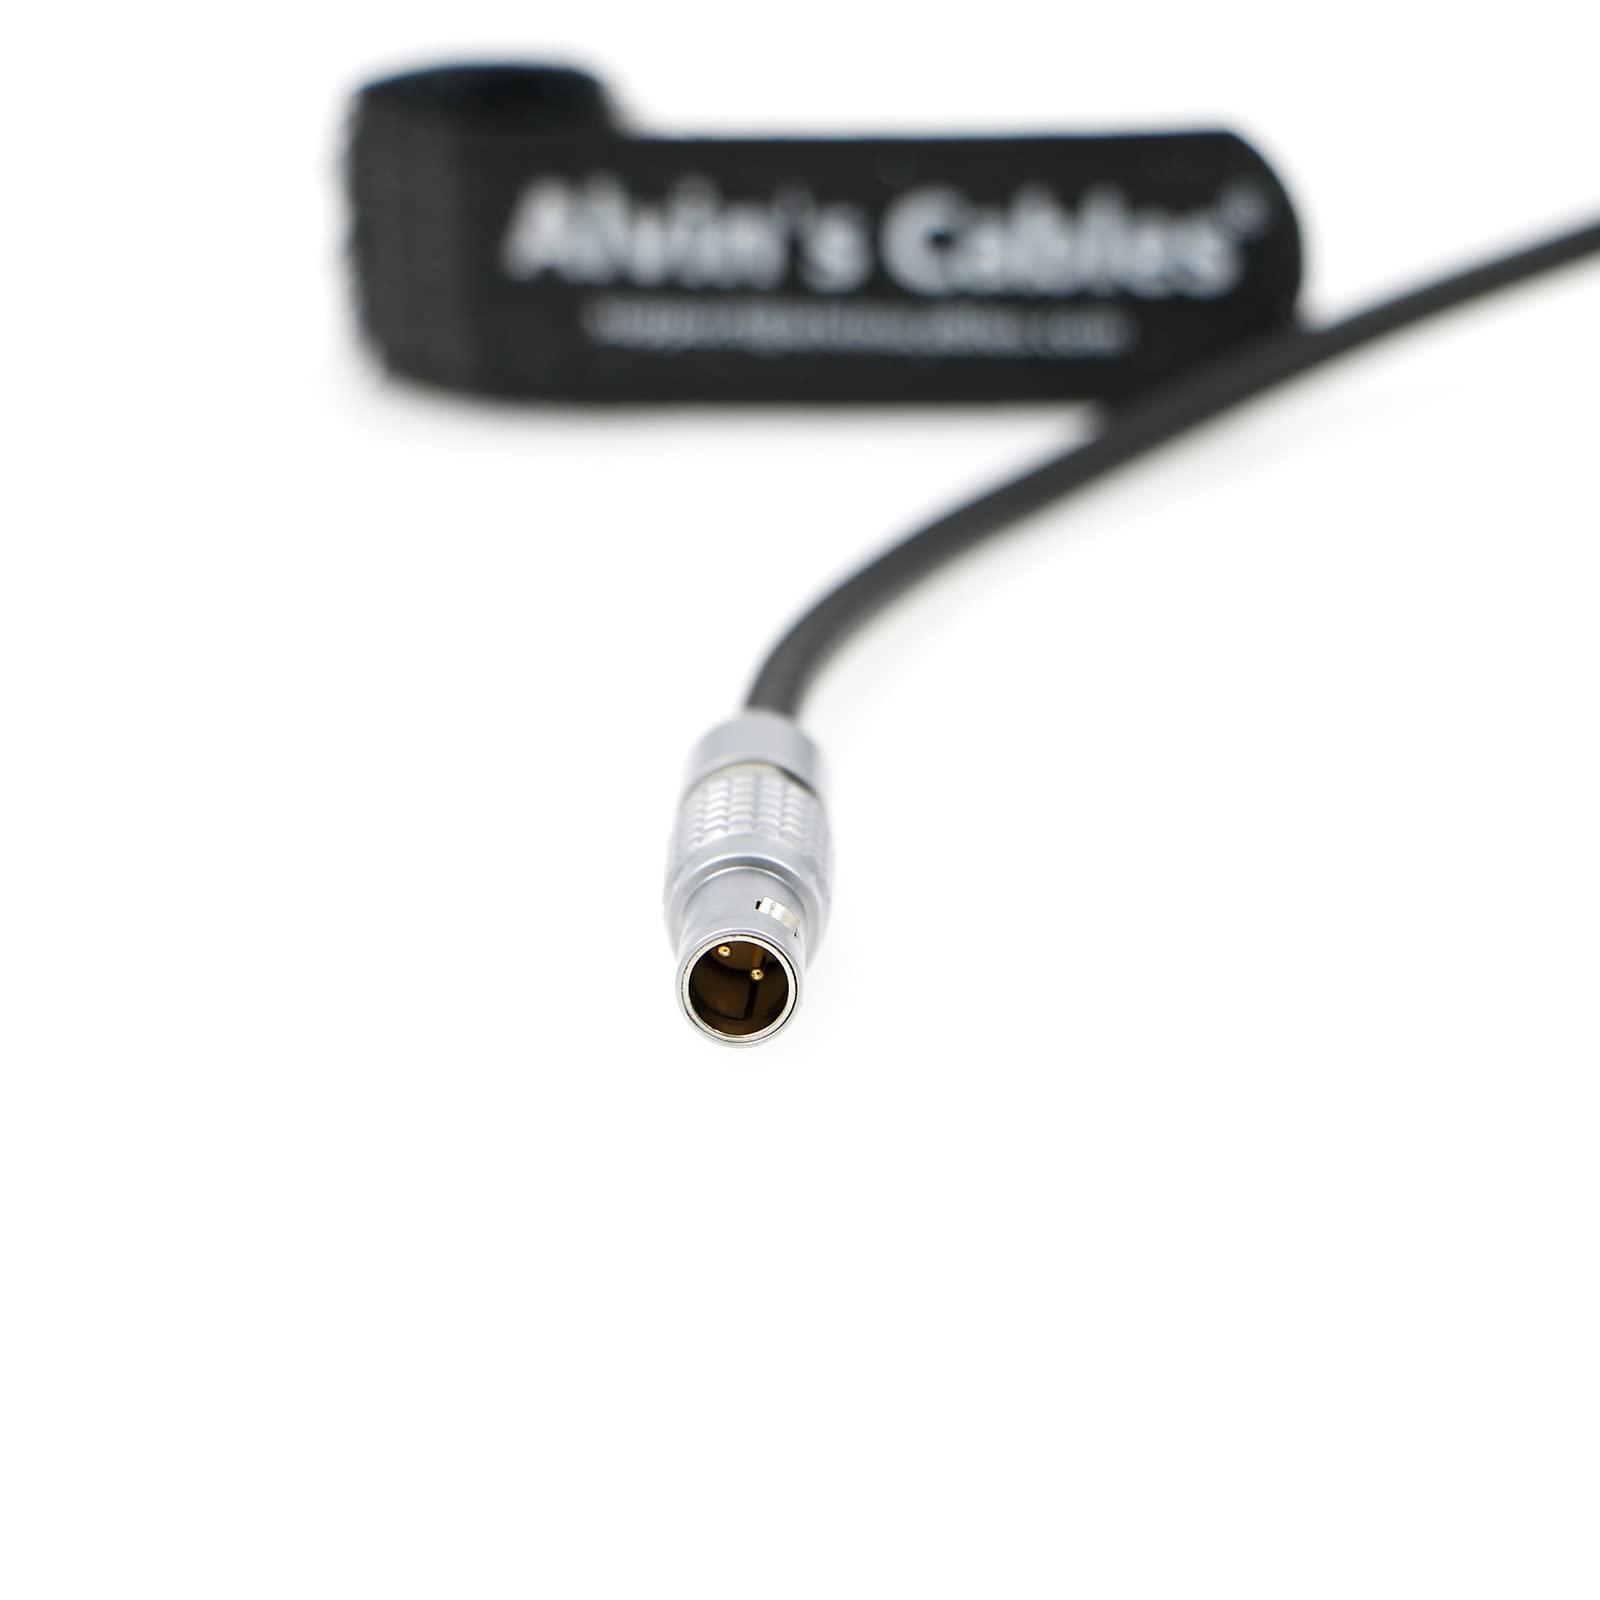 Alvin’s Cables PD USB-C Typ-C auf 2-poliges Stromkabel für Tilta| Teradek| SmallHD| Z-CAM Schnellladekabel 60cm|24inch